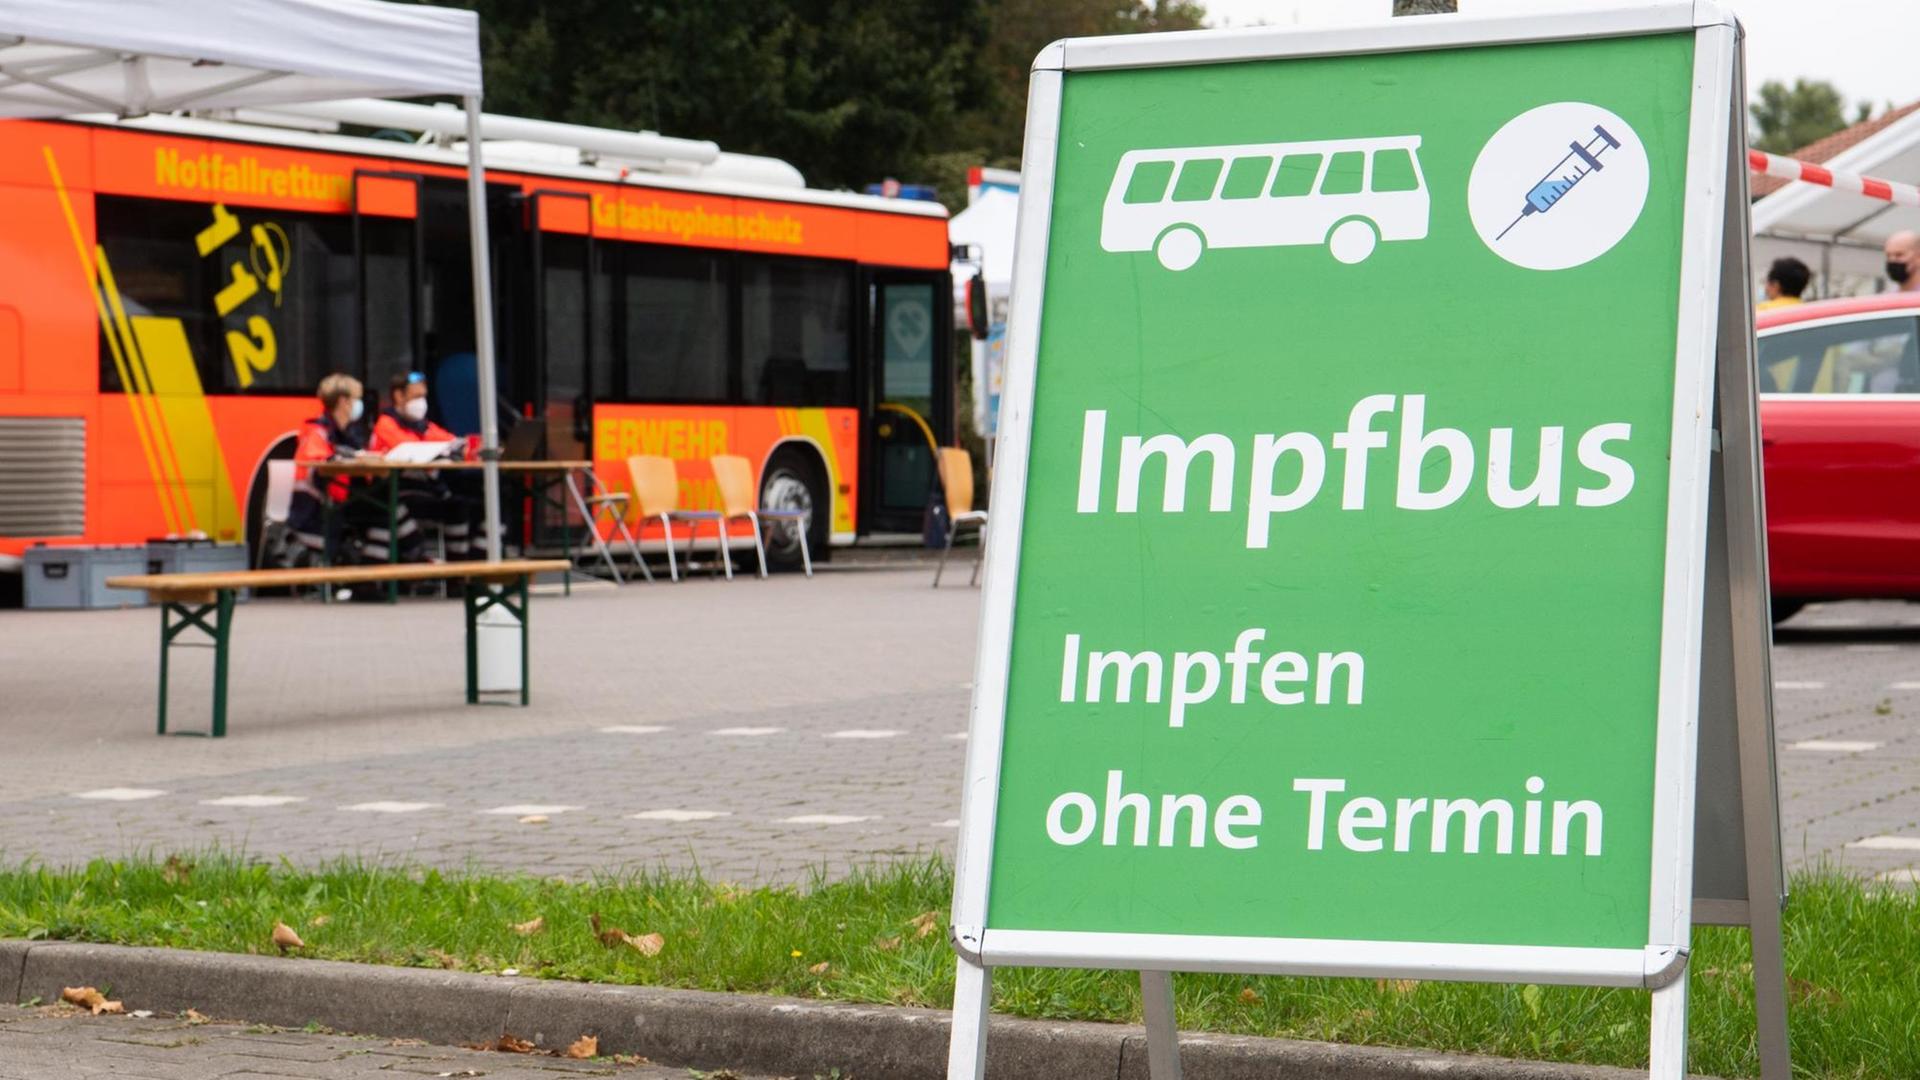 Vor dem Impf-Bus steht ein Schild: "Impfen ohne Termin"